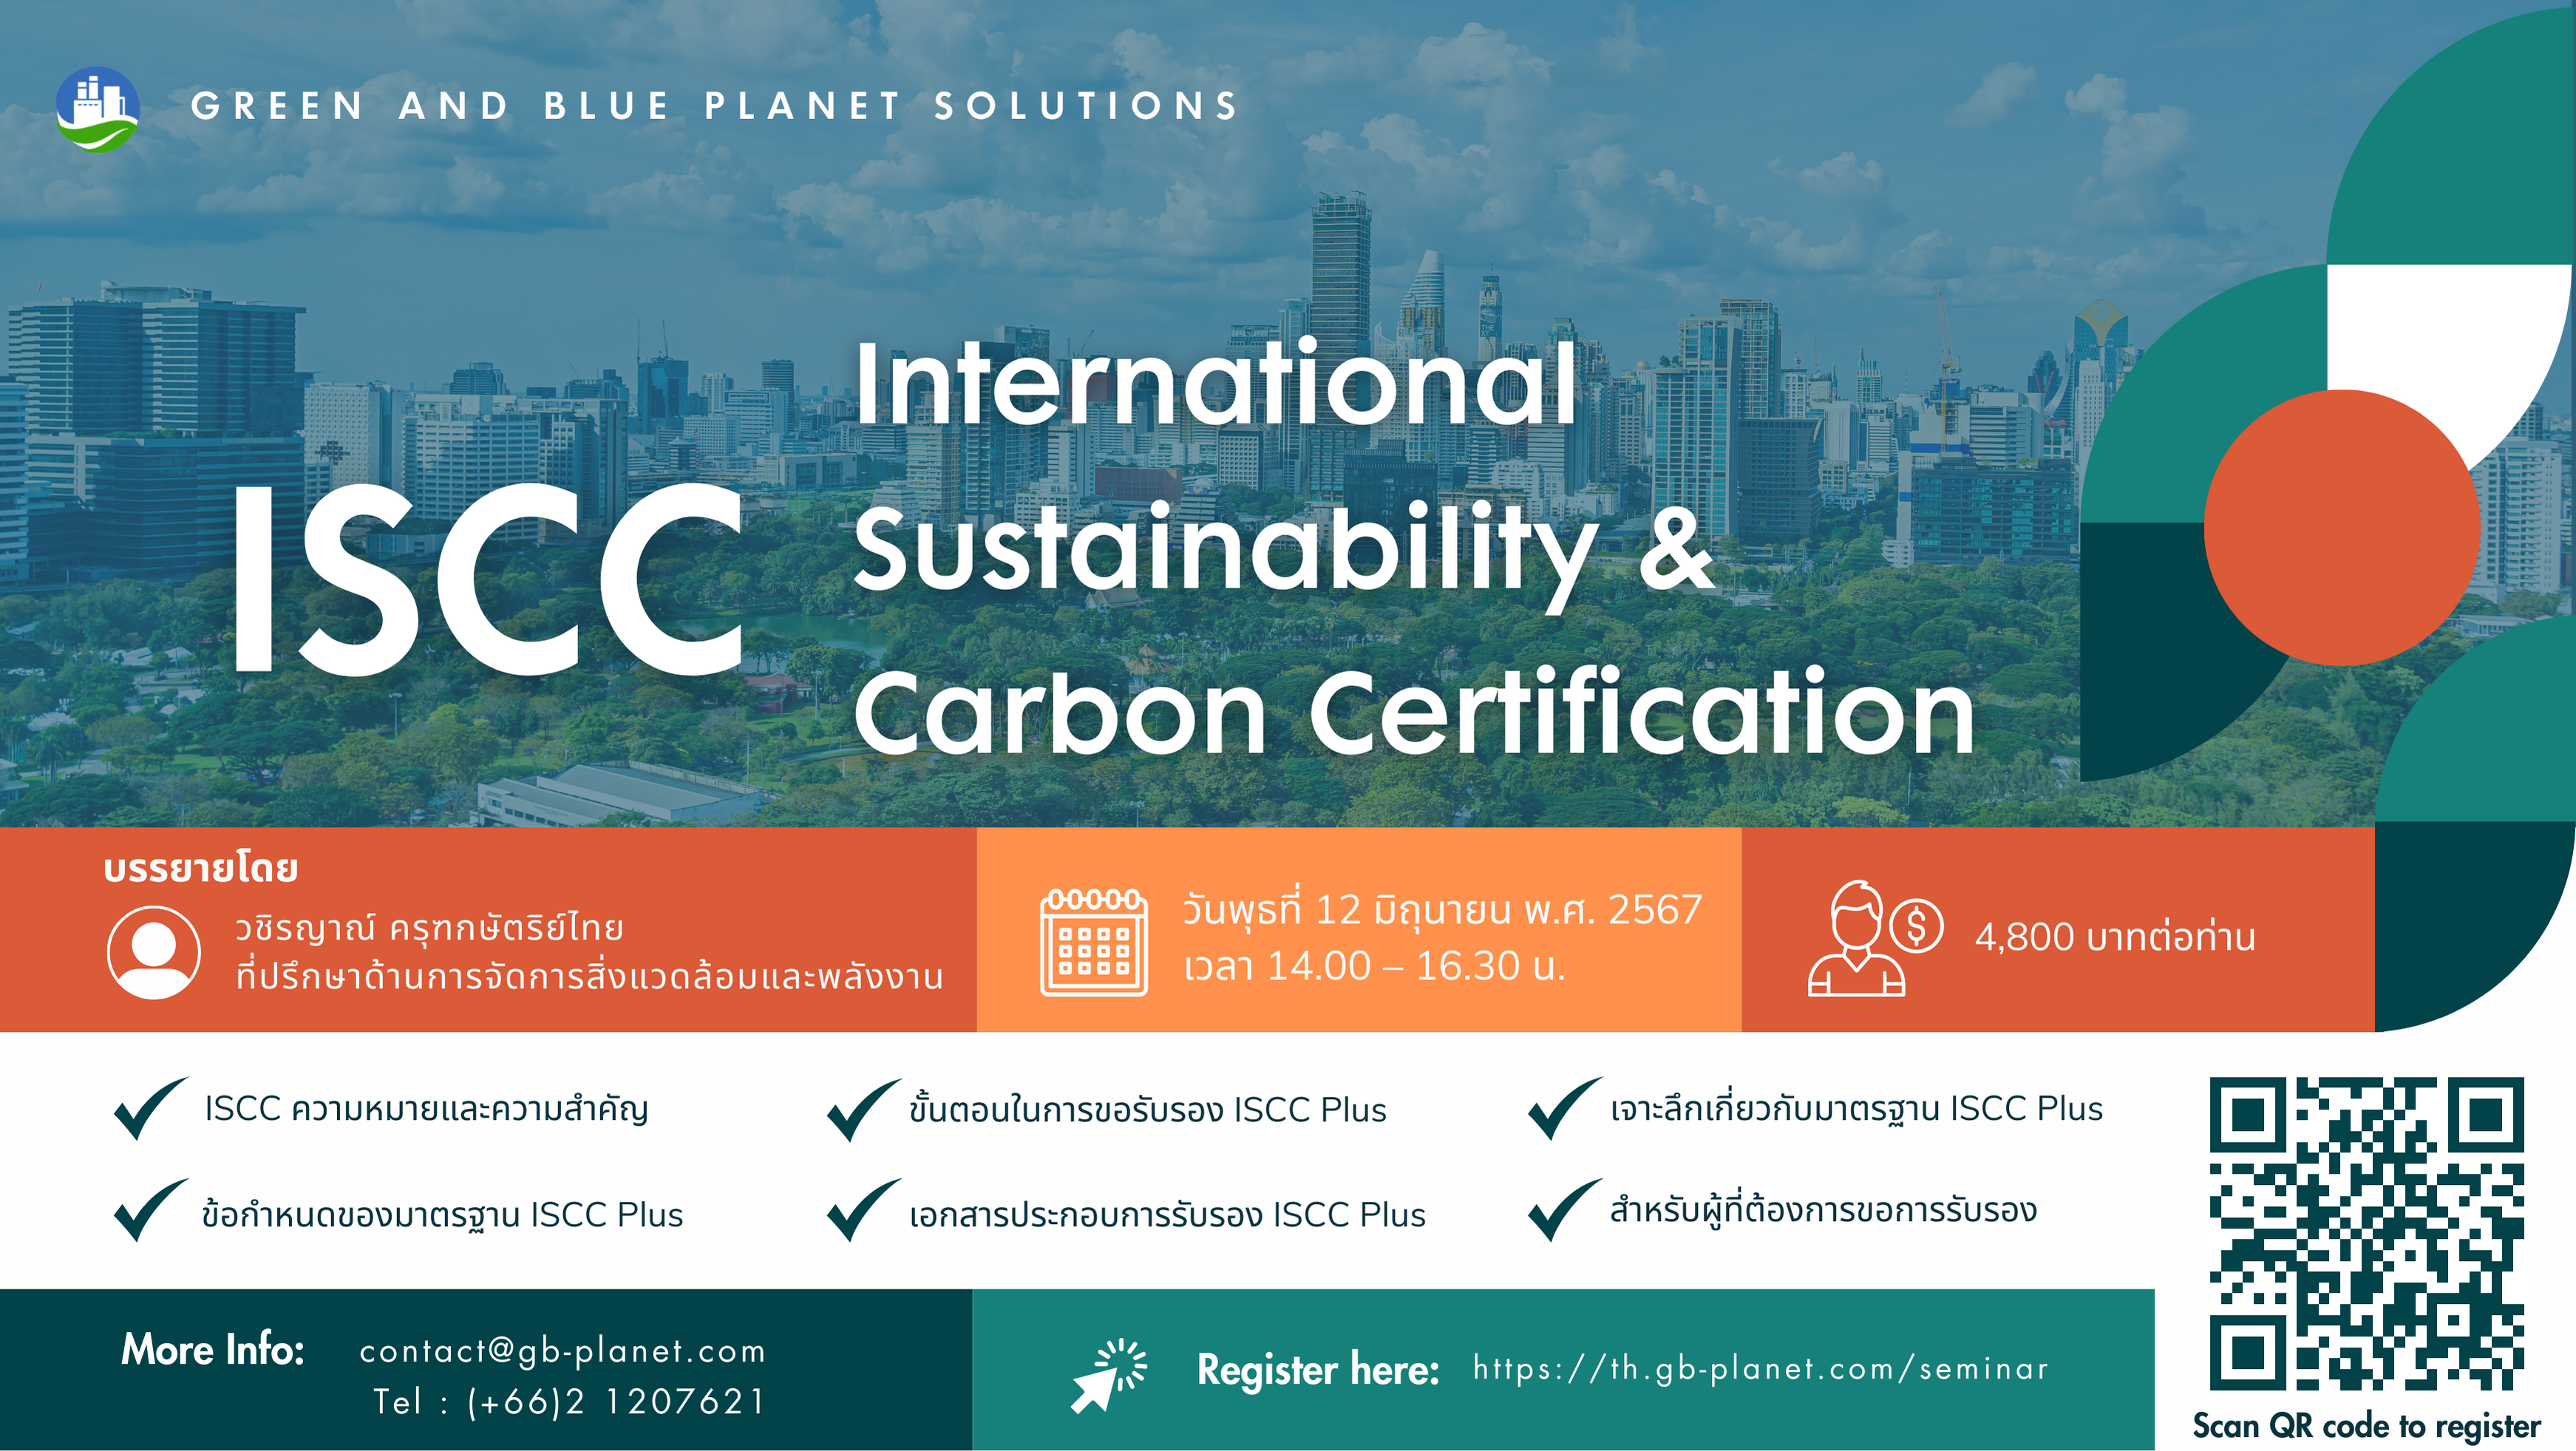 การจัดสัมมนาออนไลน์ เรื่อง International Sustainability & Carbon Certification (ISCC)